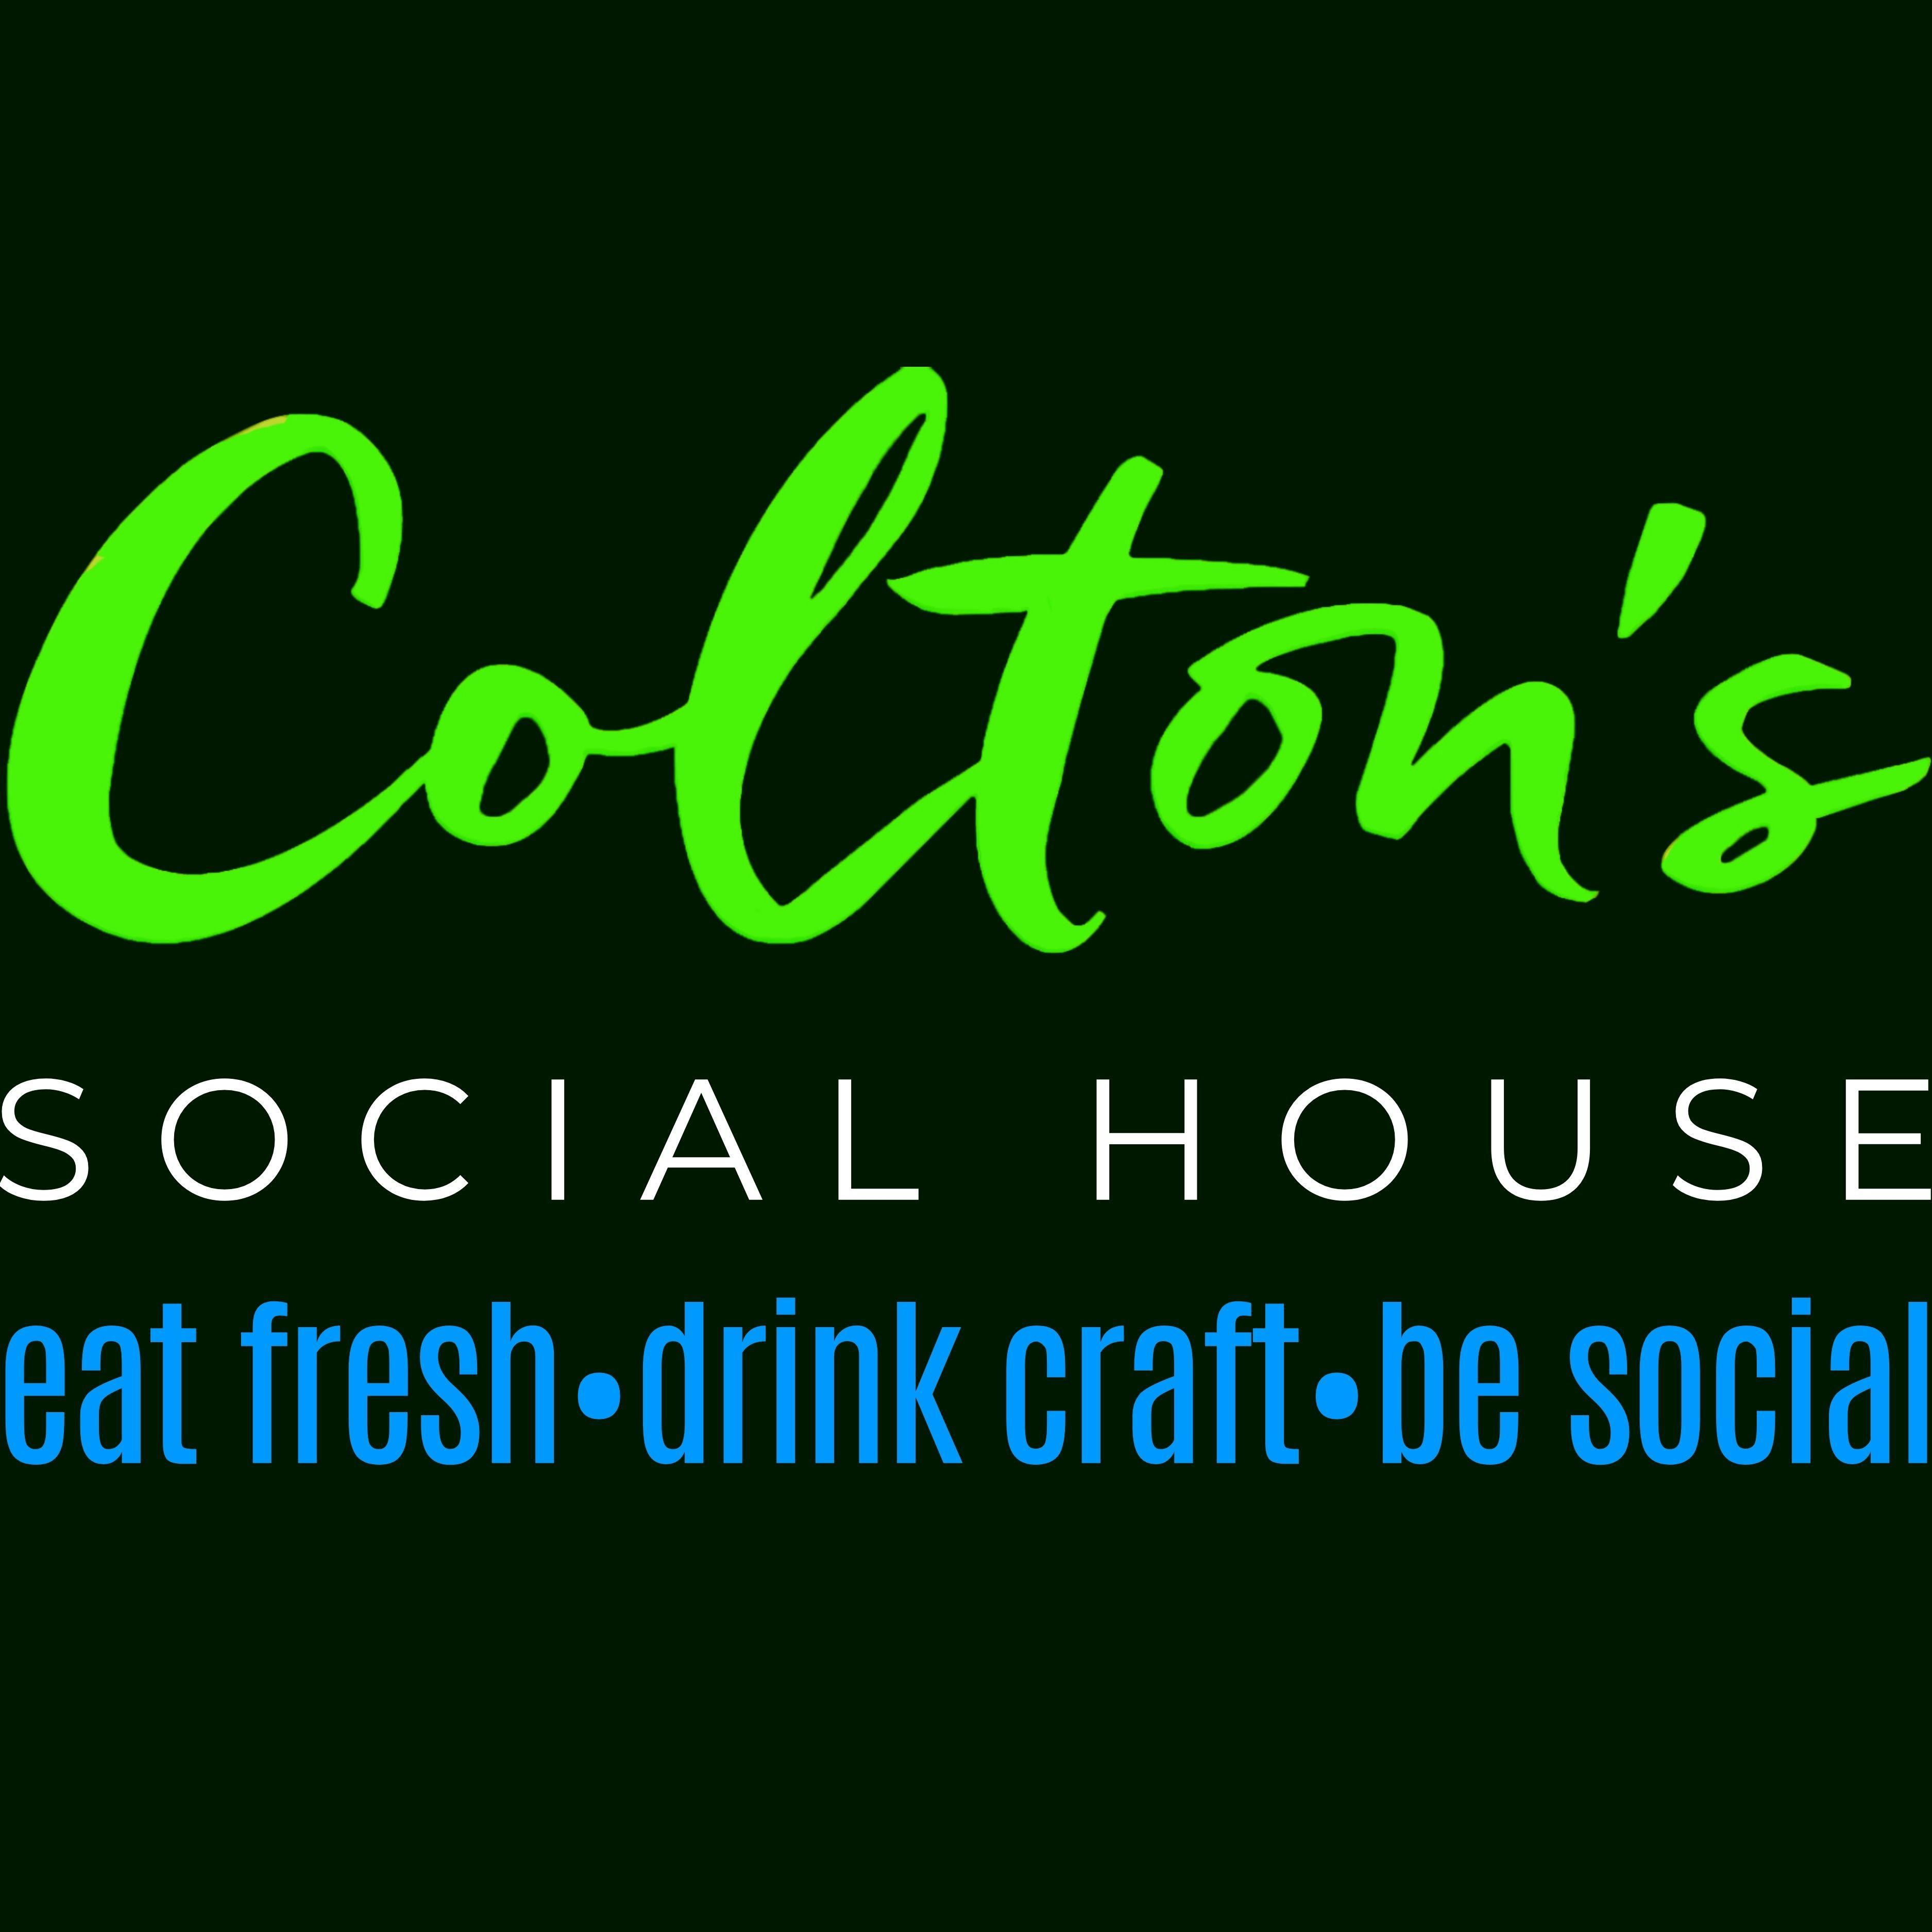 Colton's Social House - Clovis, CA 93612 - (559)721-6655 | ShowMeLocal.com